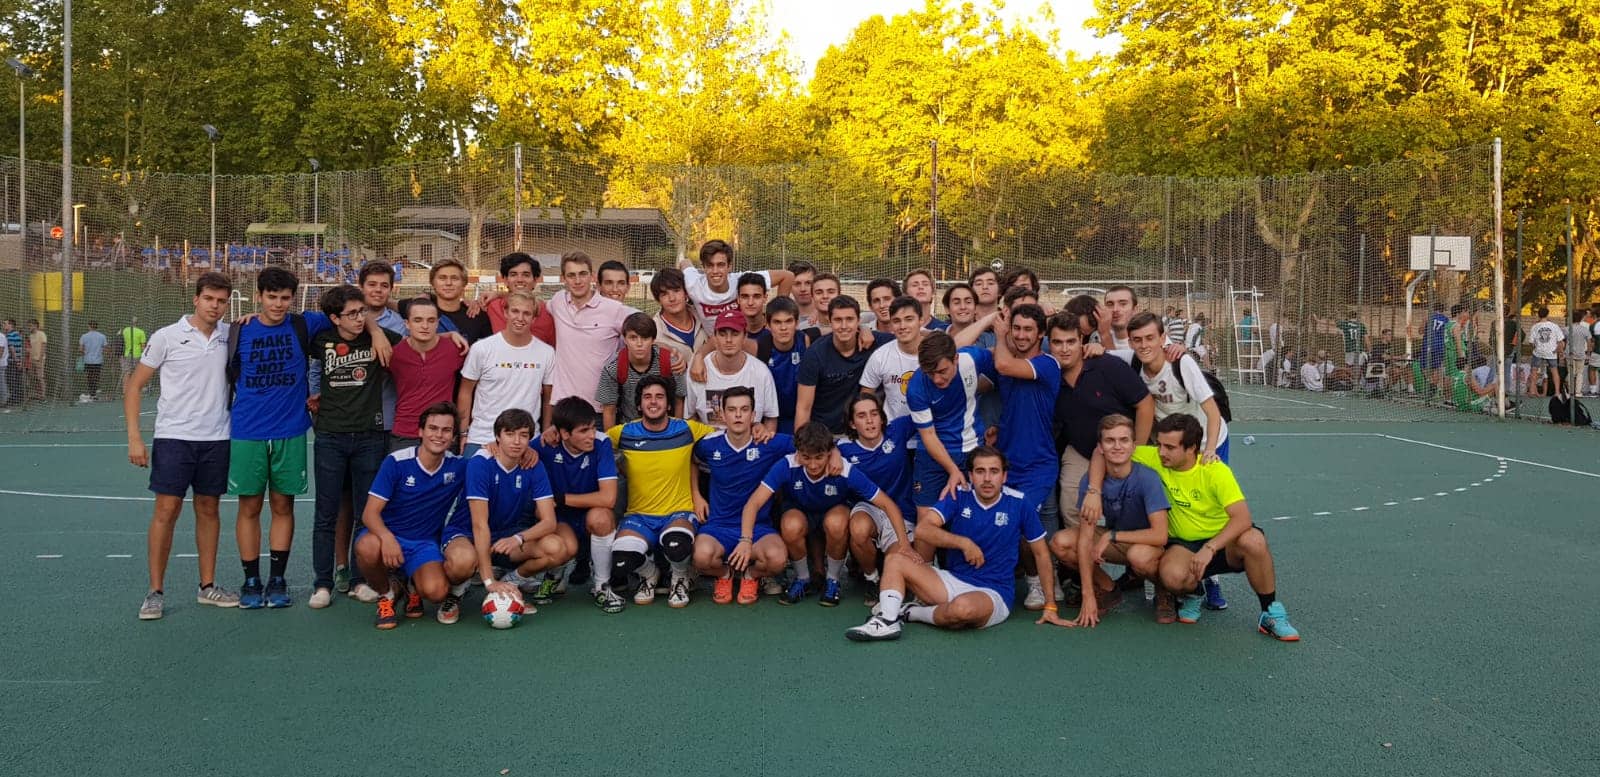 Equipo CM Alcalá campeones en Fútbol Sala V Torneo Intercolegial